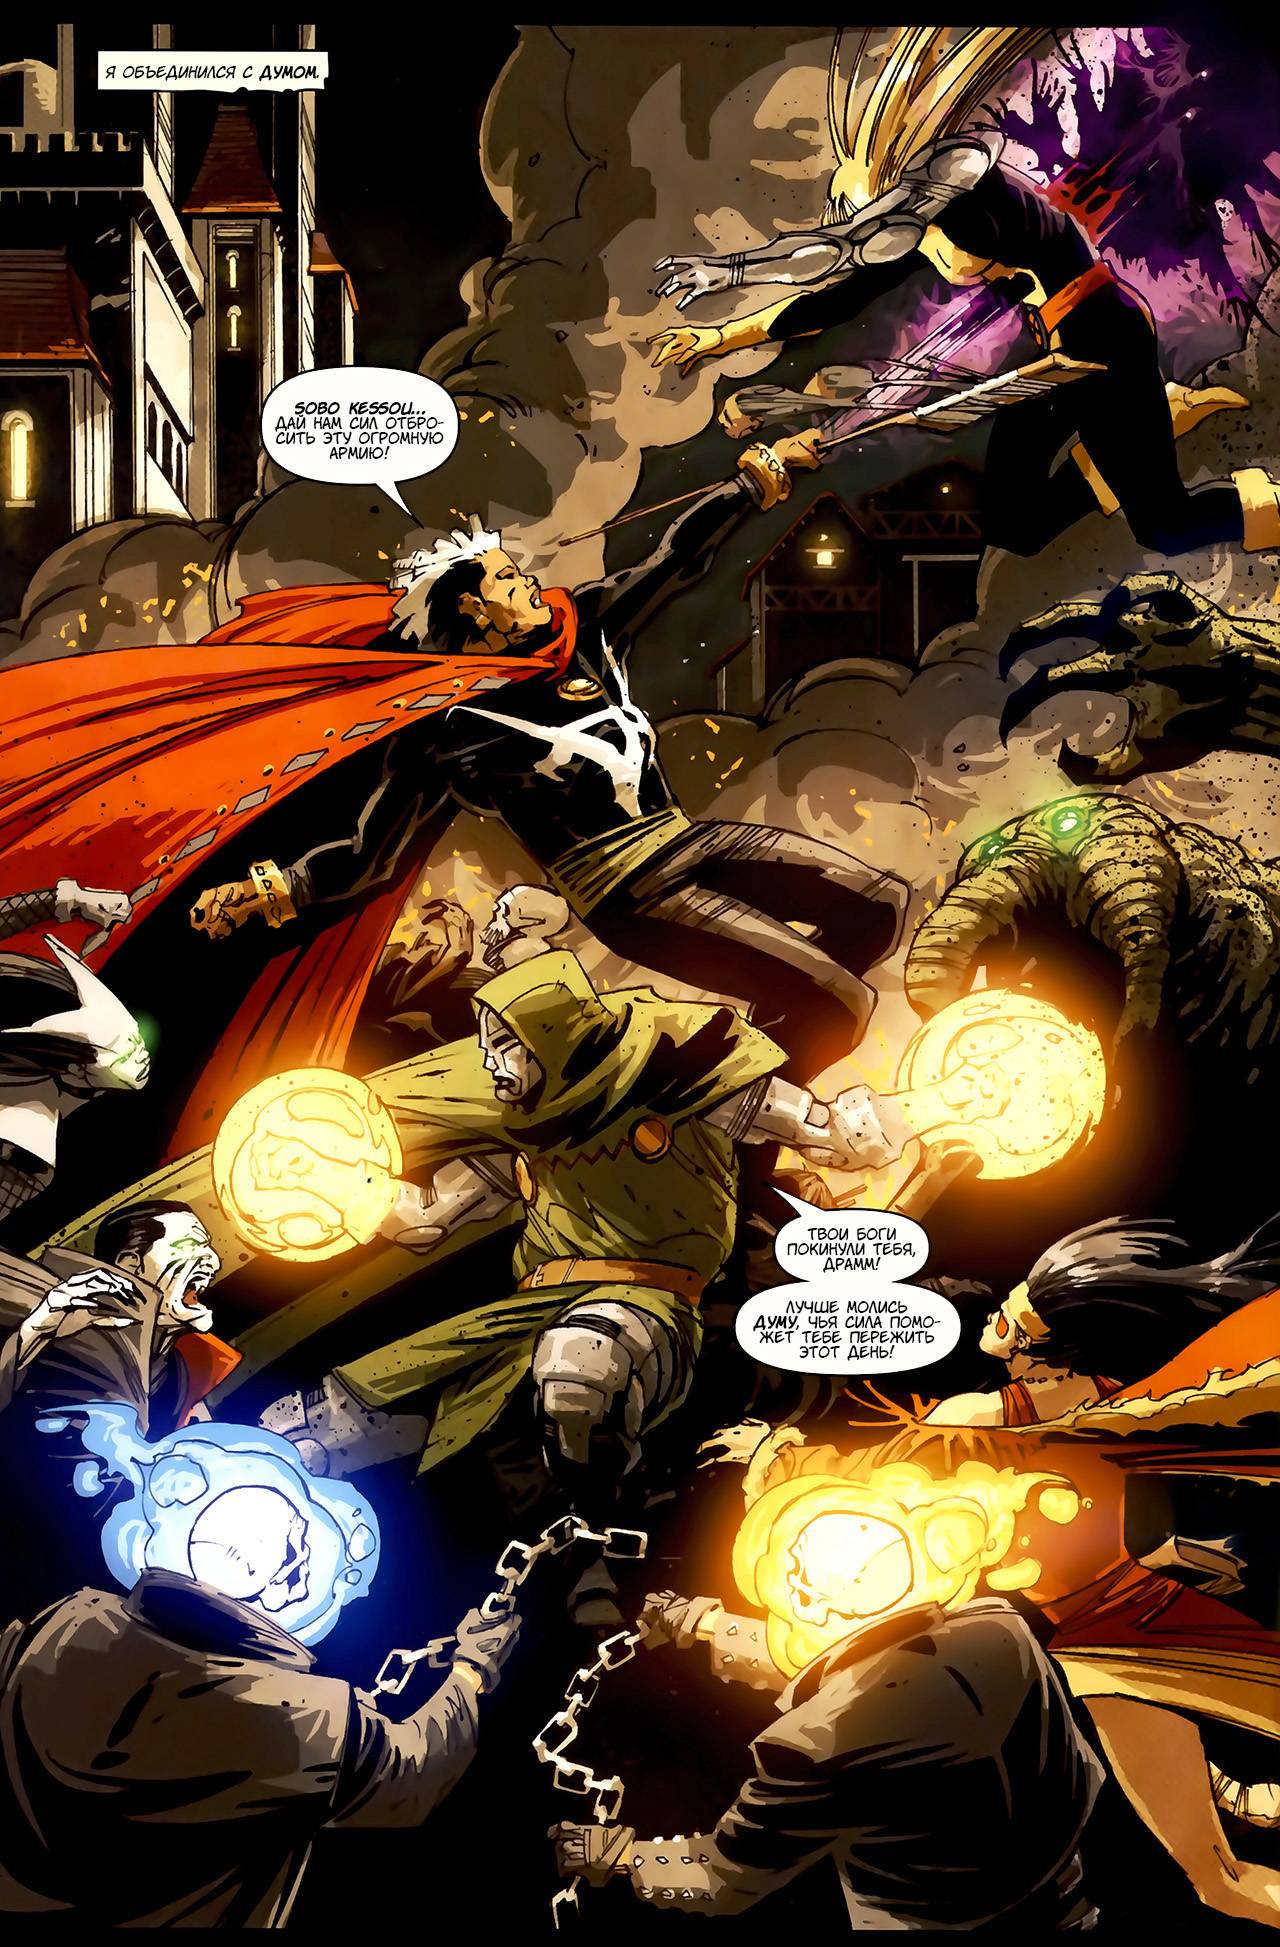 Доктор Вуду: Мститель Сверхъестественного №5 онлайн